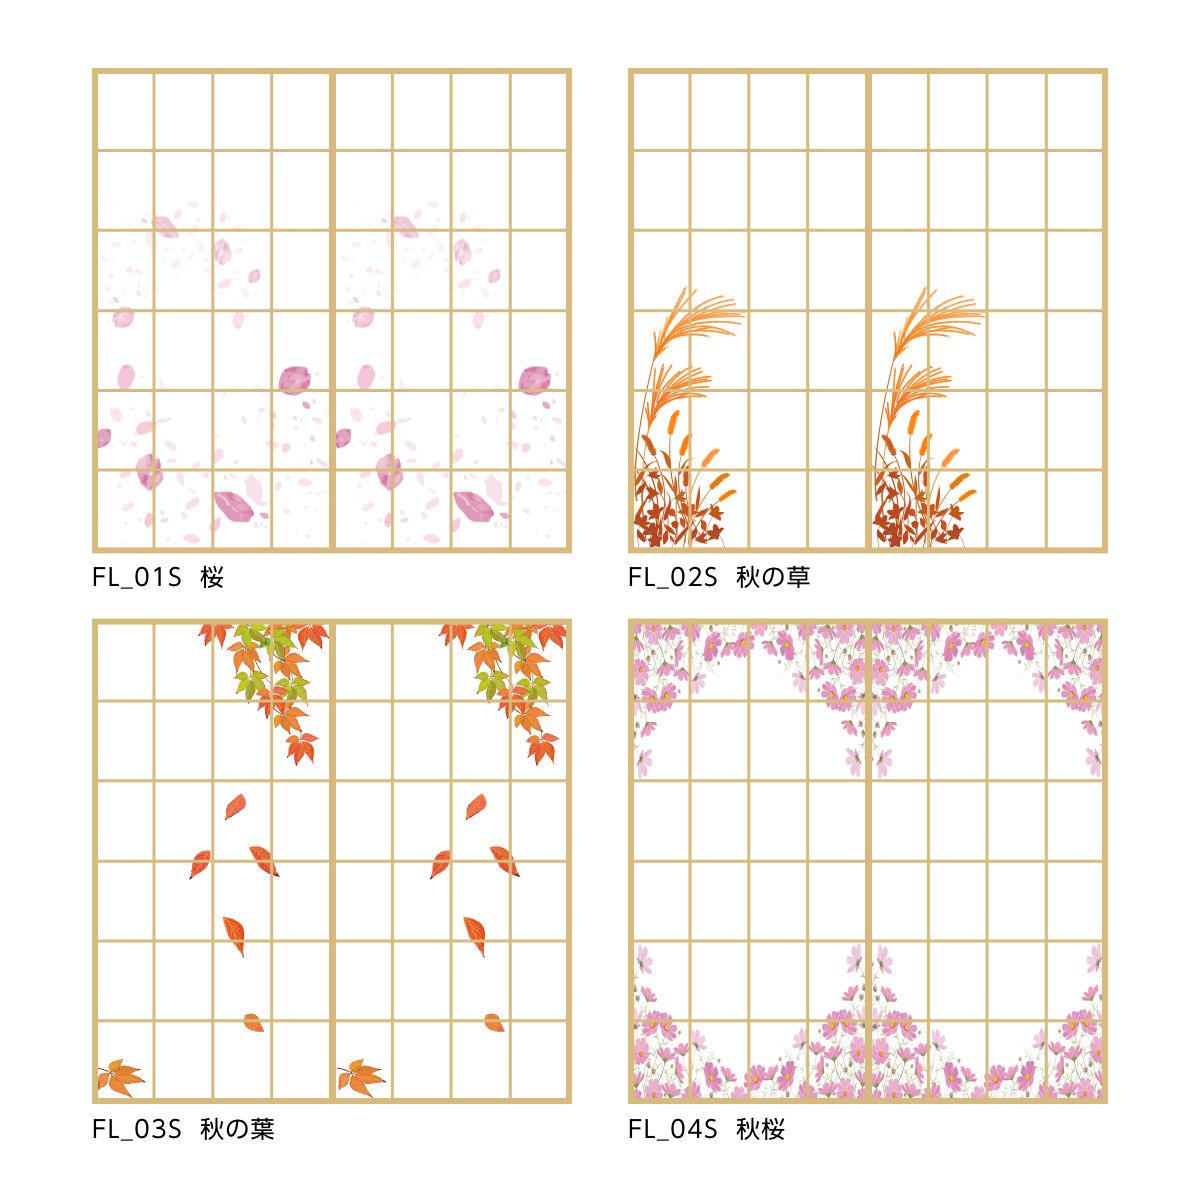 Shoji Paper Stylish Seasonal Flowers Wisteria FL_06S Glue Type Width 90cm x Length 180cm 1 piece Shoji Cute Shoji Paper Shoji Modern Western Style Asahipen